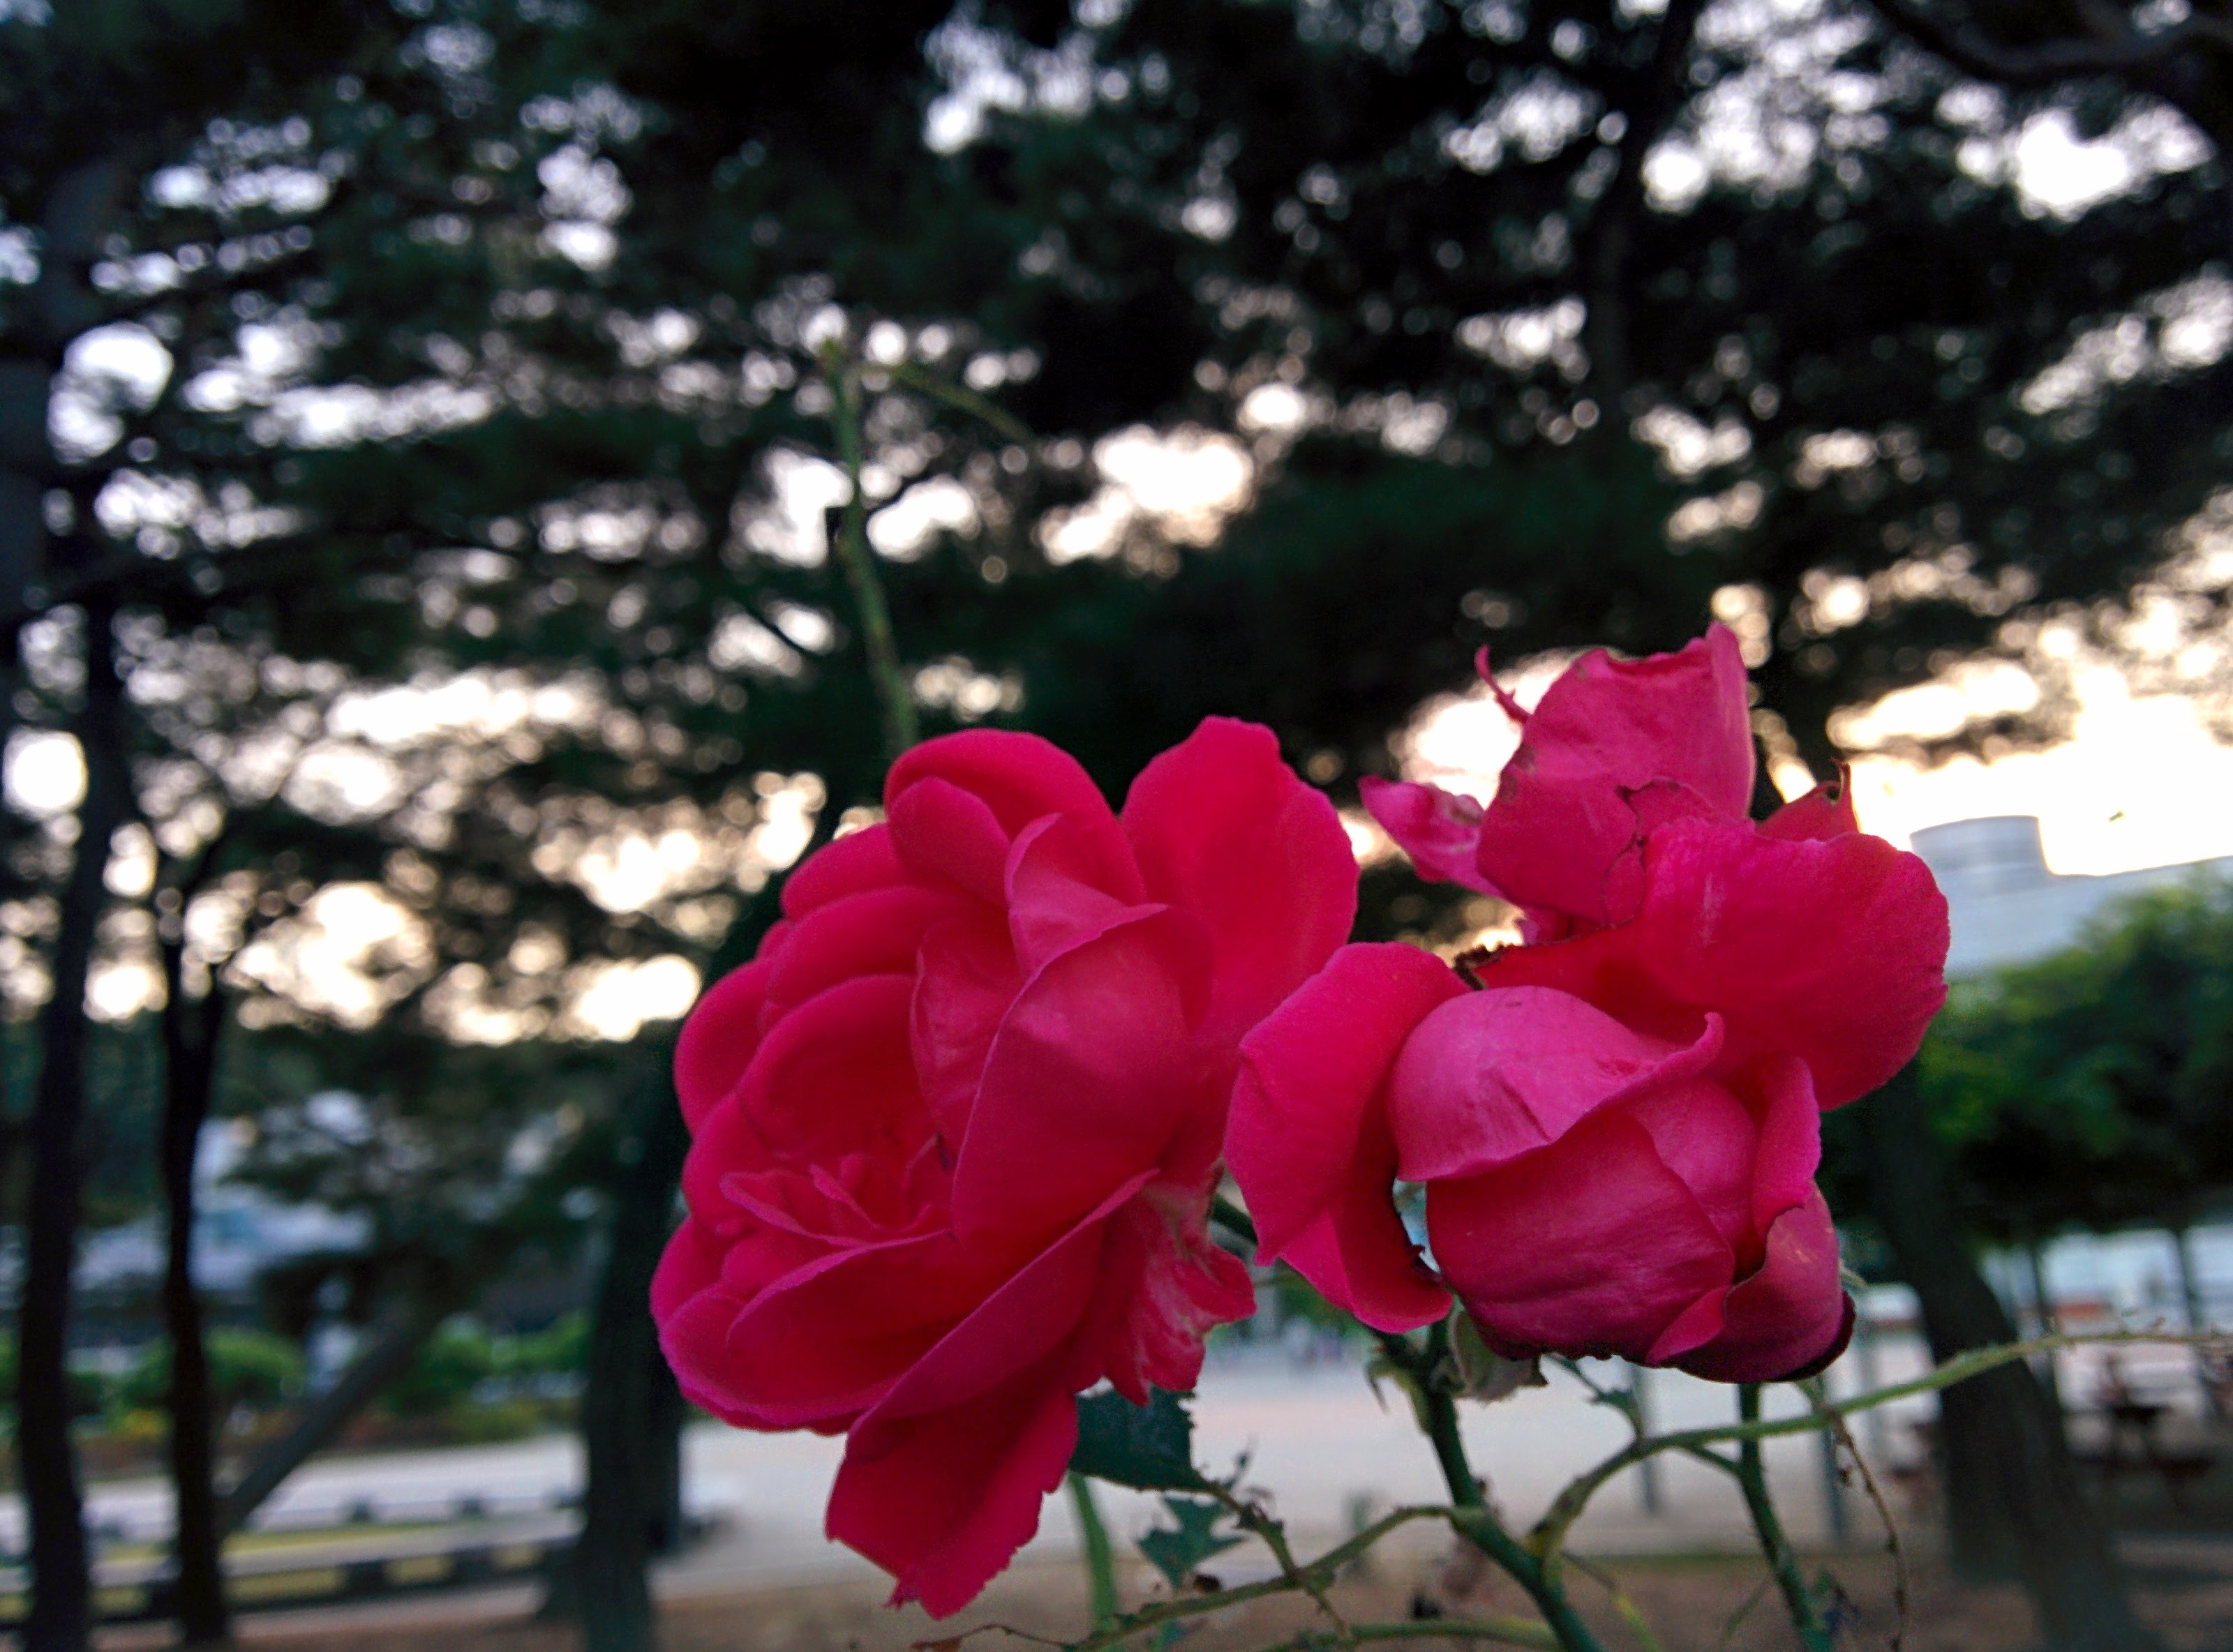 IMG_20150922_181323.jpg 장미, 늦은 9월의 빨간색 꽃을 피우다.